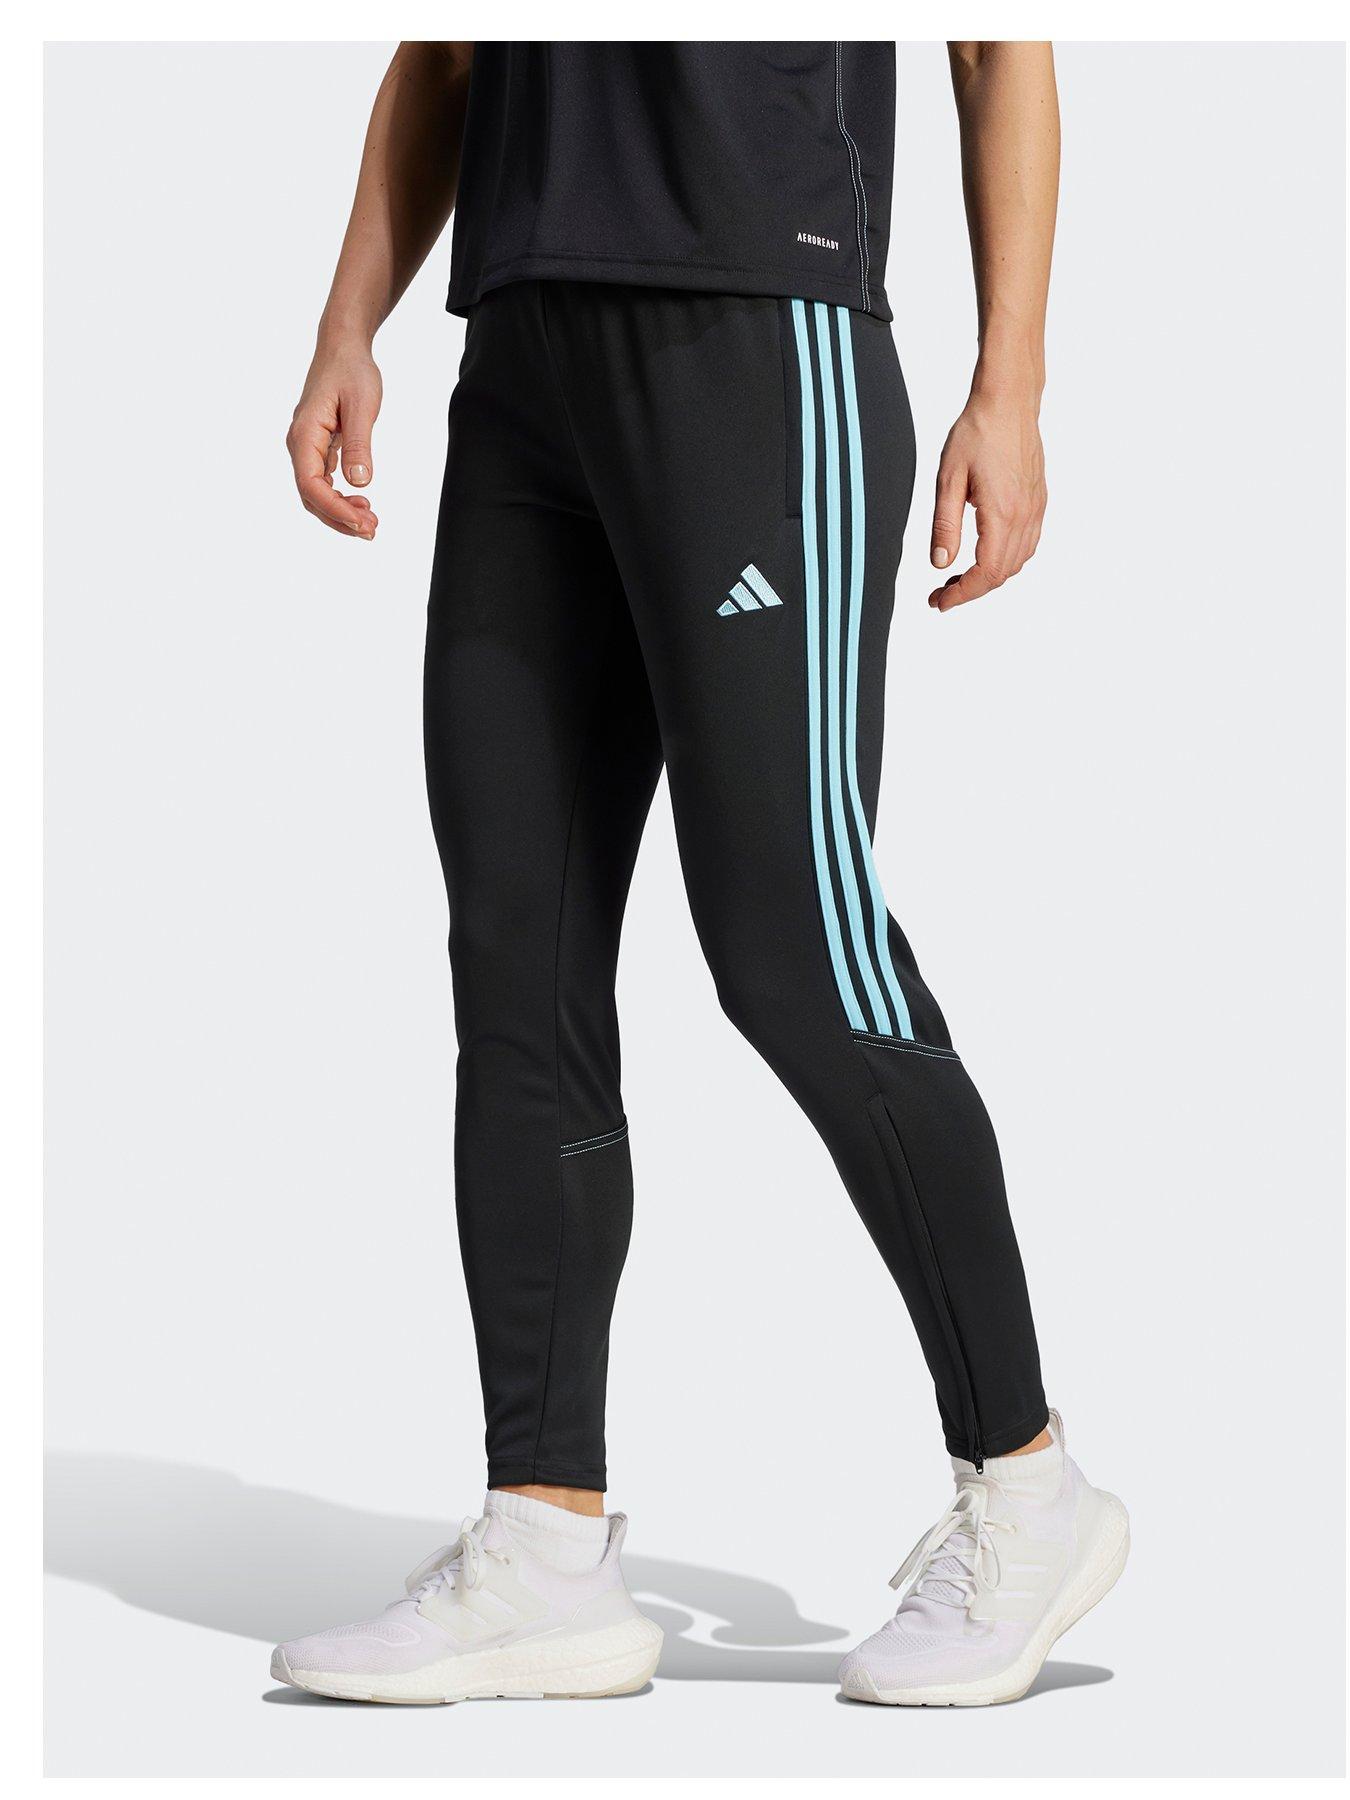 Adidas sportswear, Jogging bottoms, Sportswear, Women